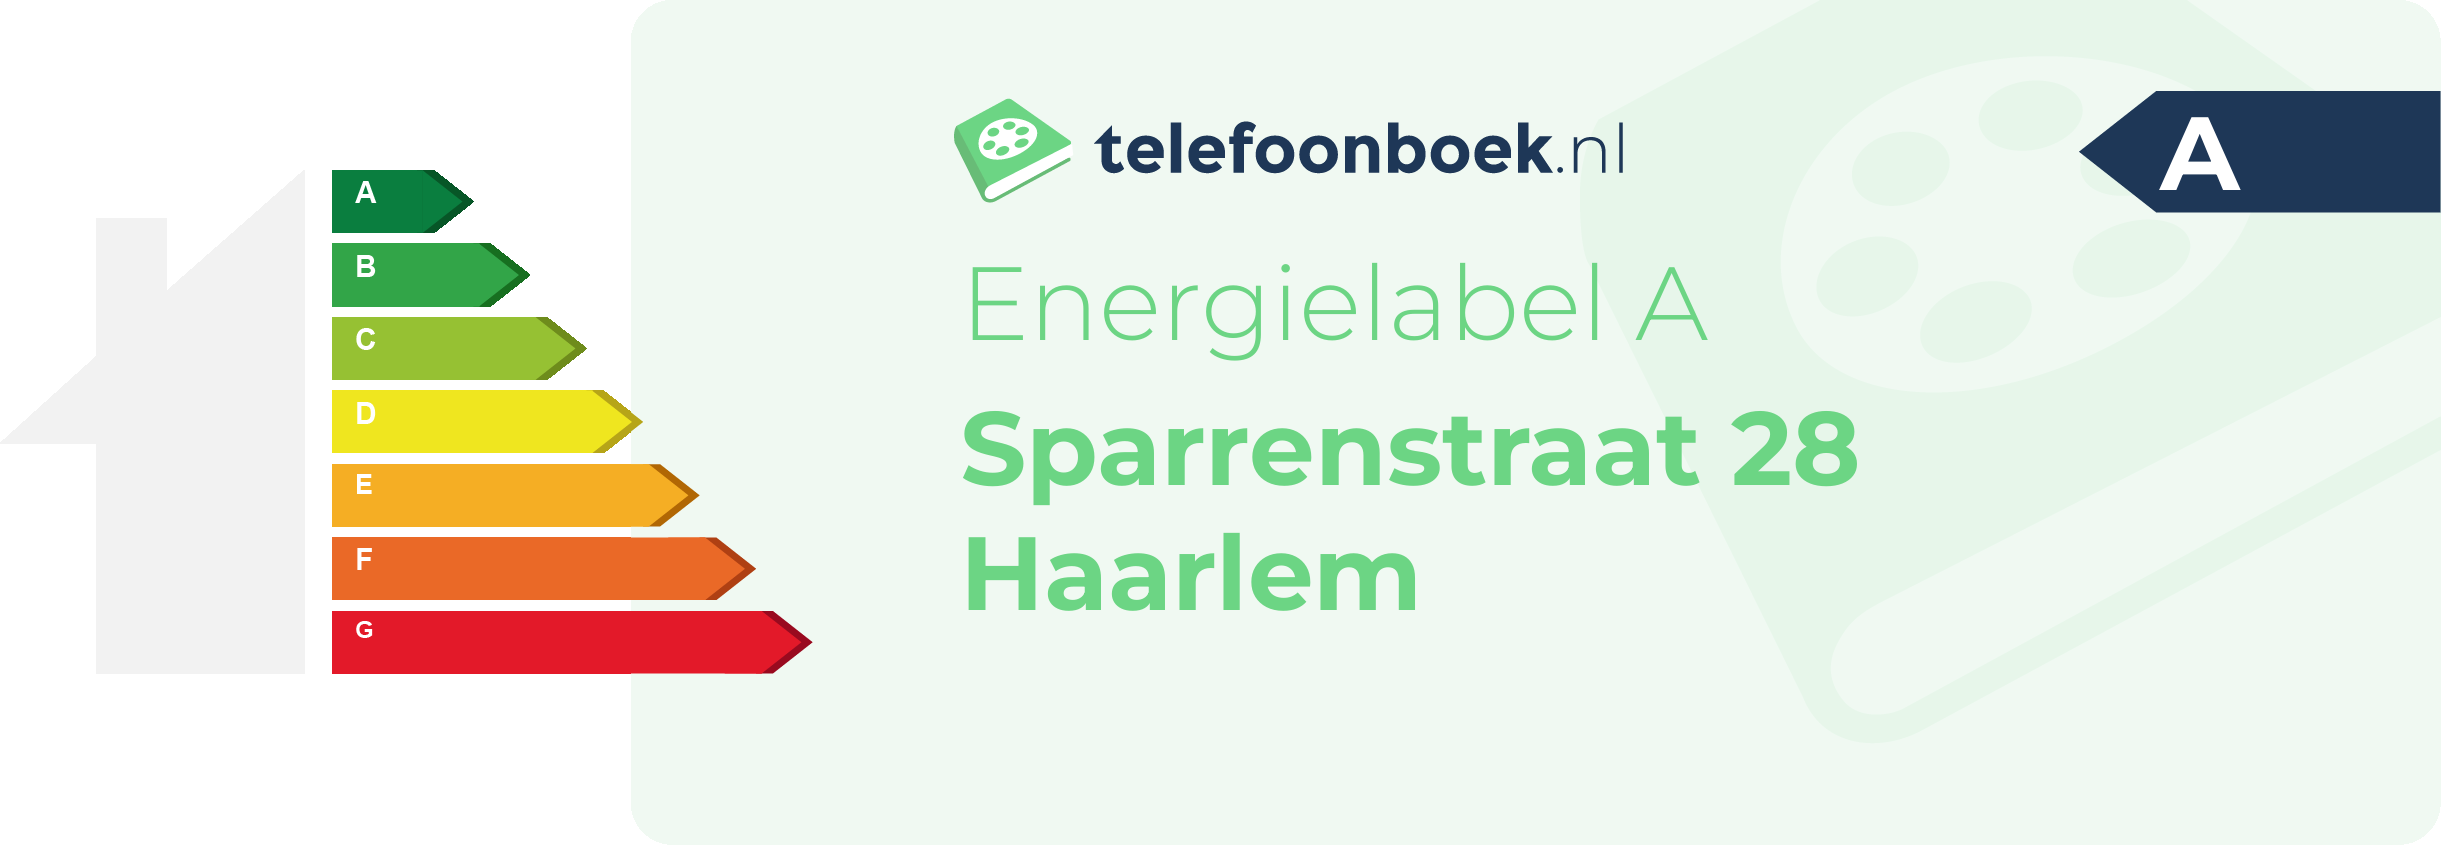 Energielabel Sparrenstraat 28 Haarlem